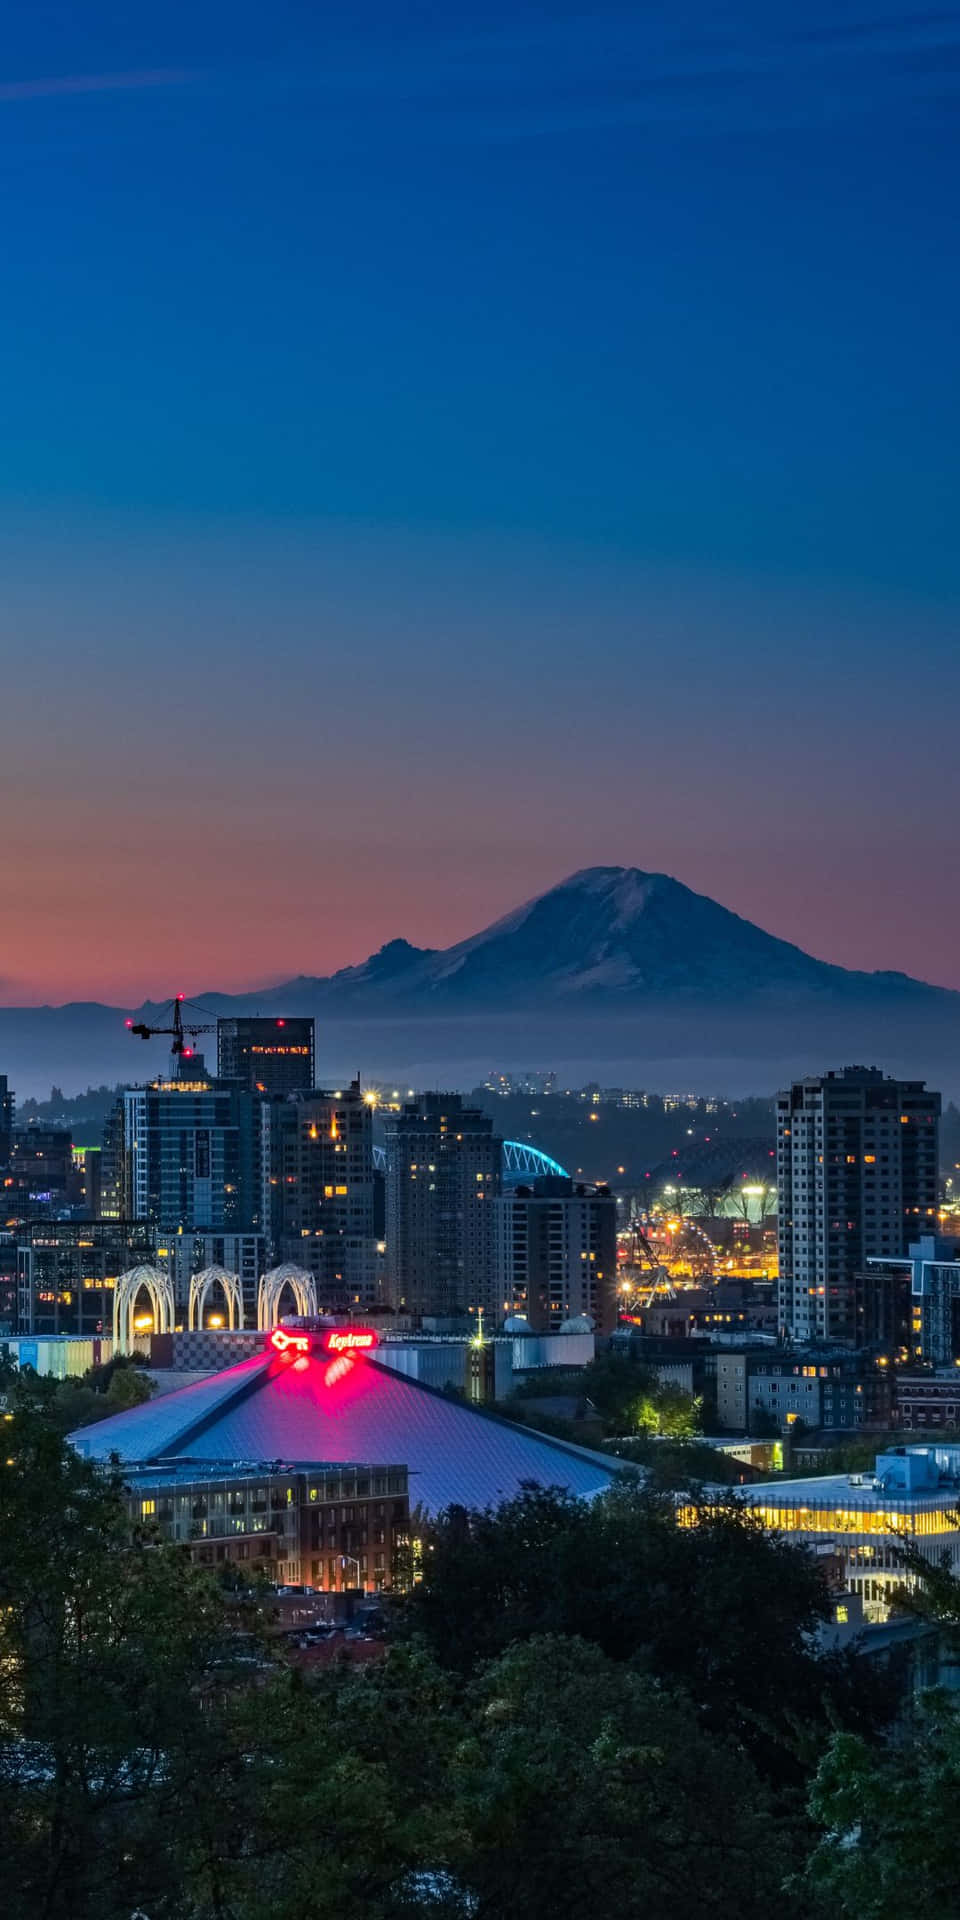 Nyd et smukt Seattle-solnedgang fra Pixel 3.